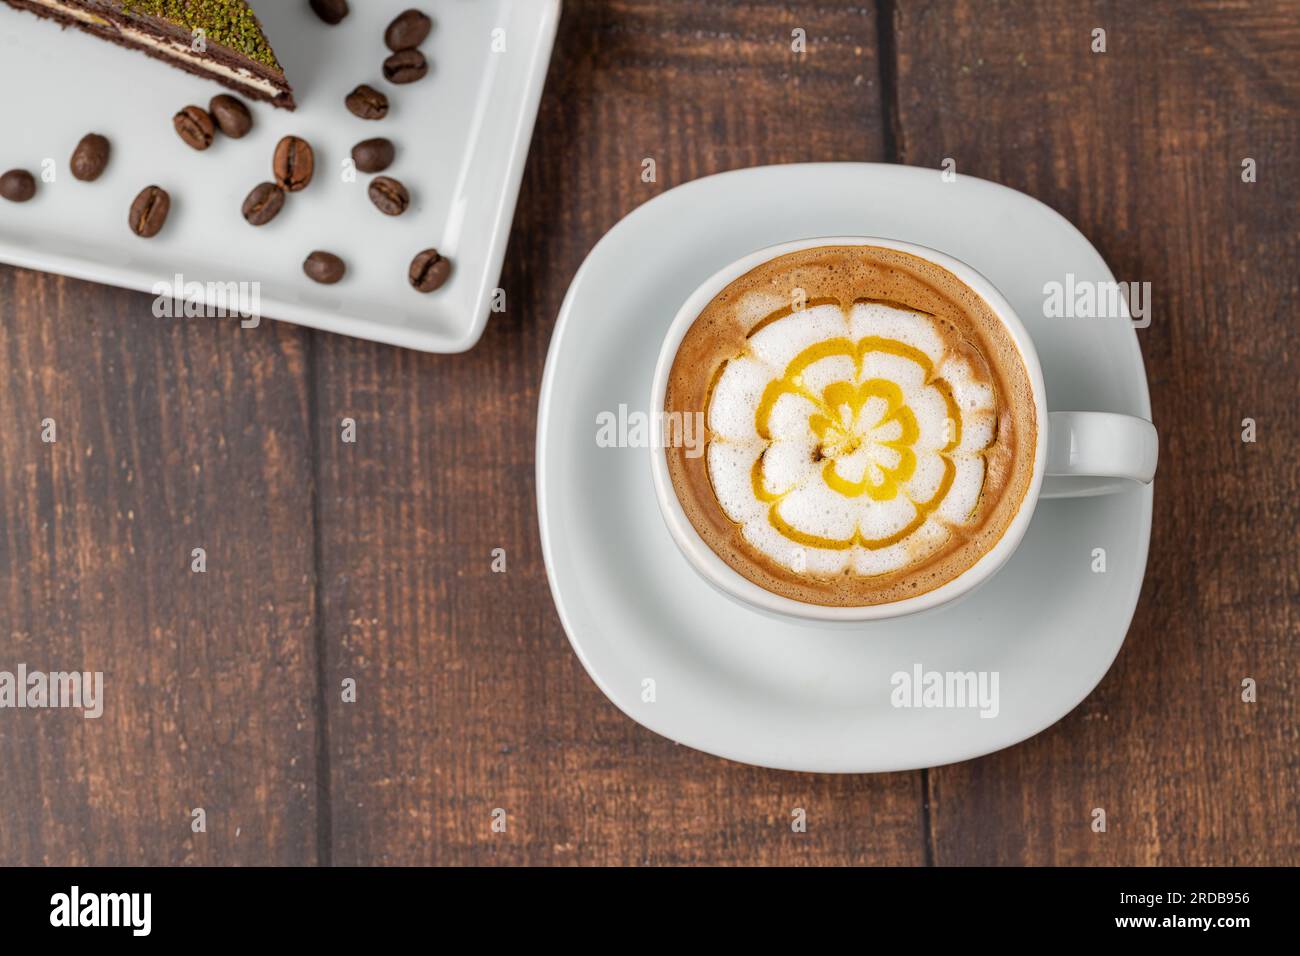 Café cappuccino à motifs dans une tasse en porcelaine blanche sur une table en bois Banque D'Images